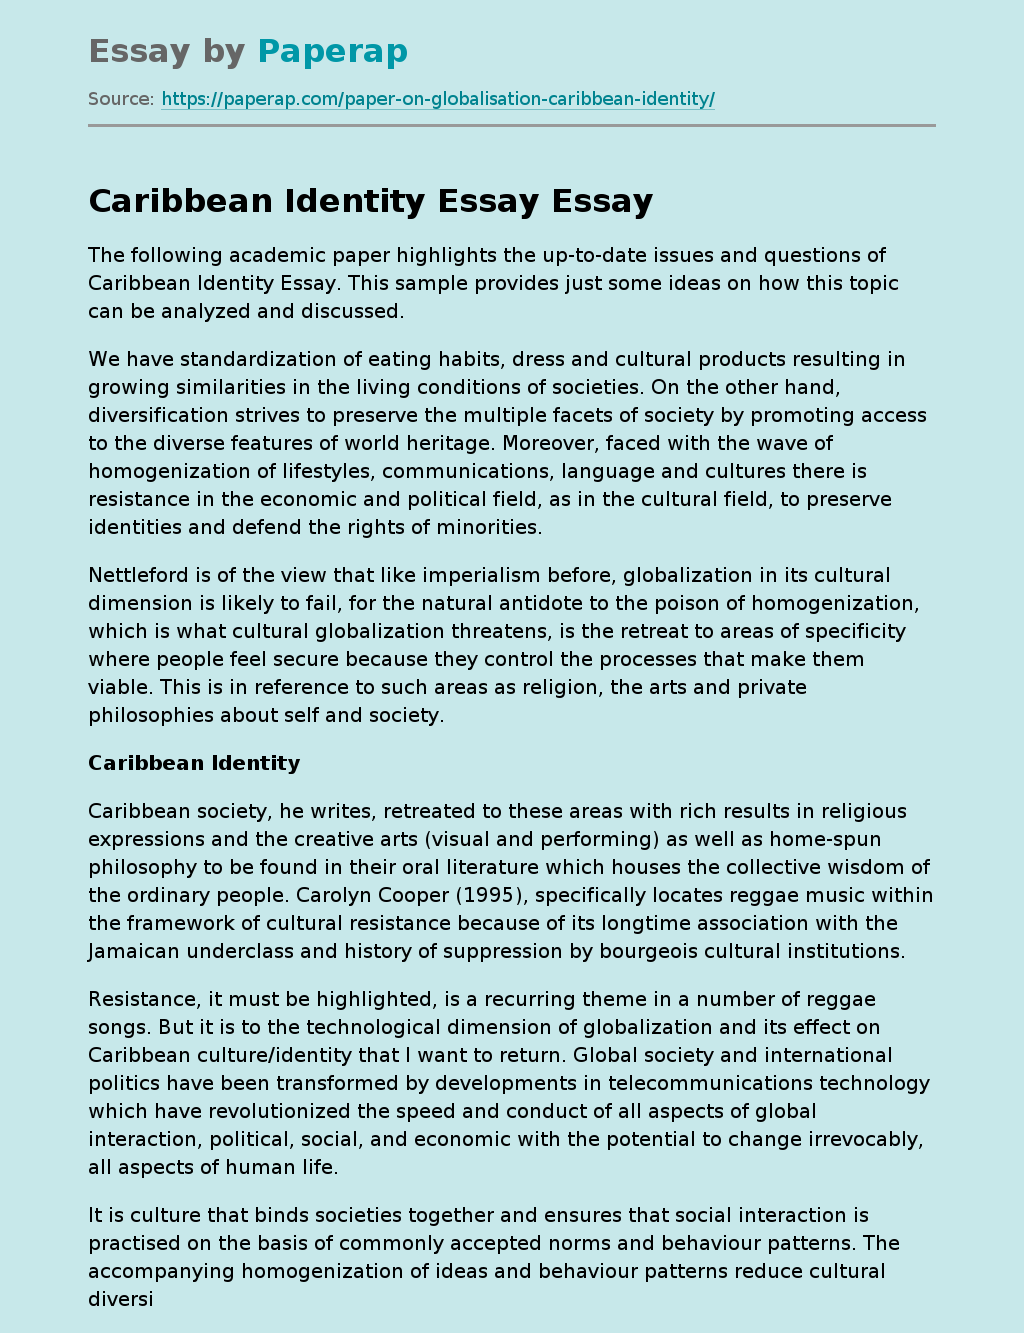 Caribbean Identity Essay